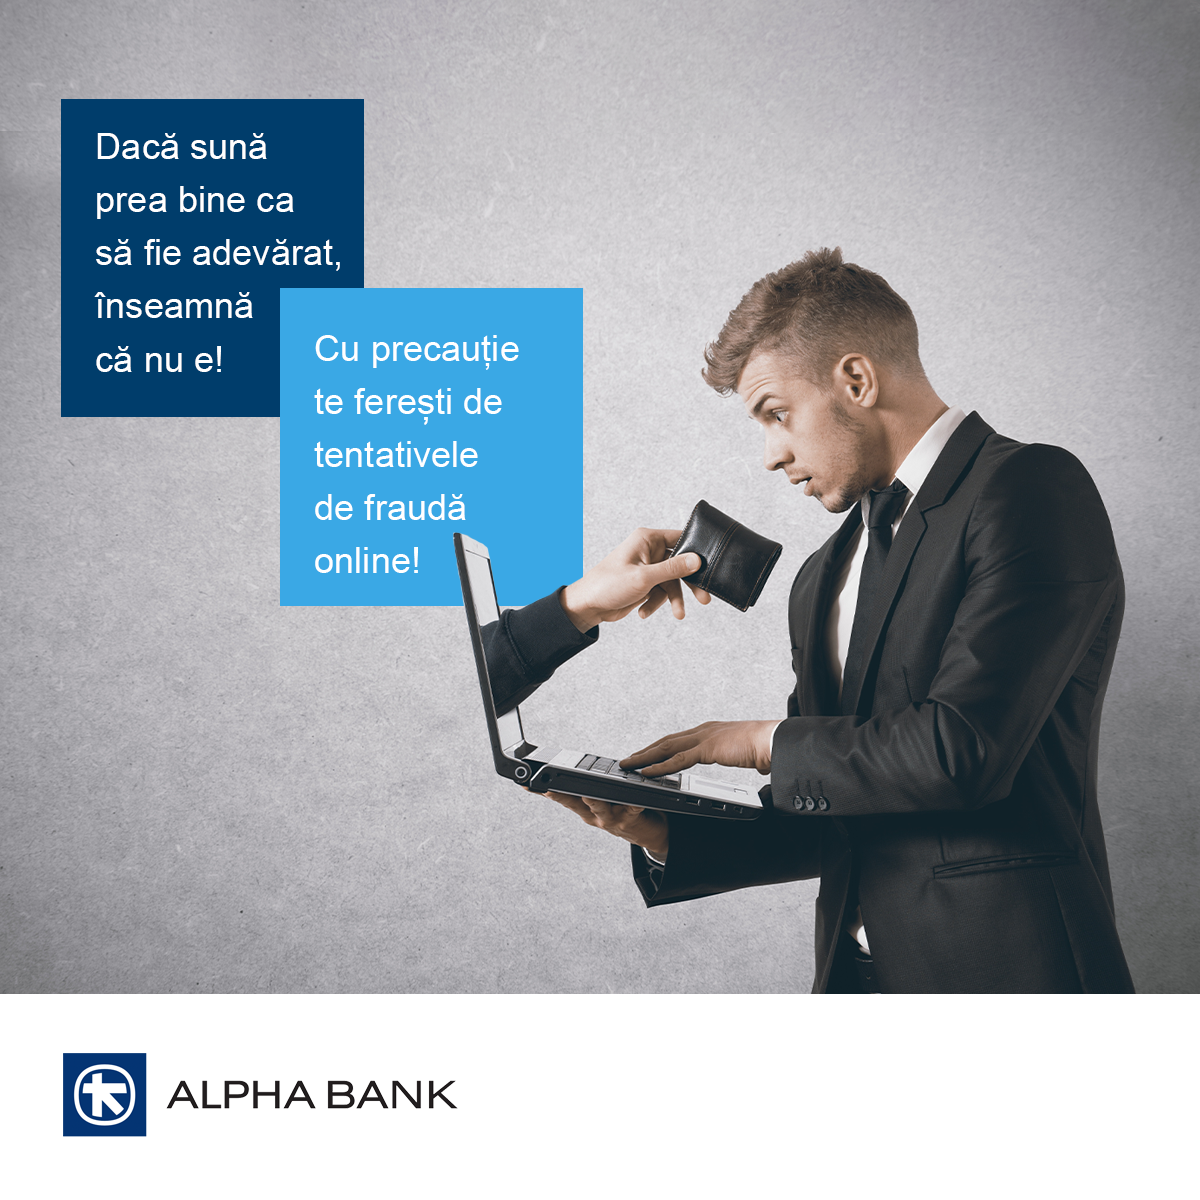 Alpha Bank Romania: Recomandări pentru evitarea tentativelor de fraudă online